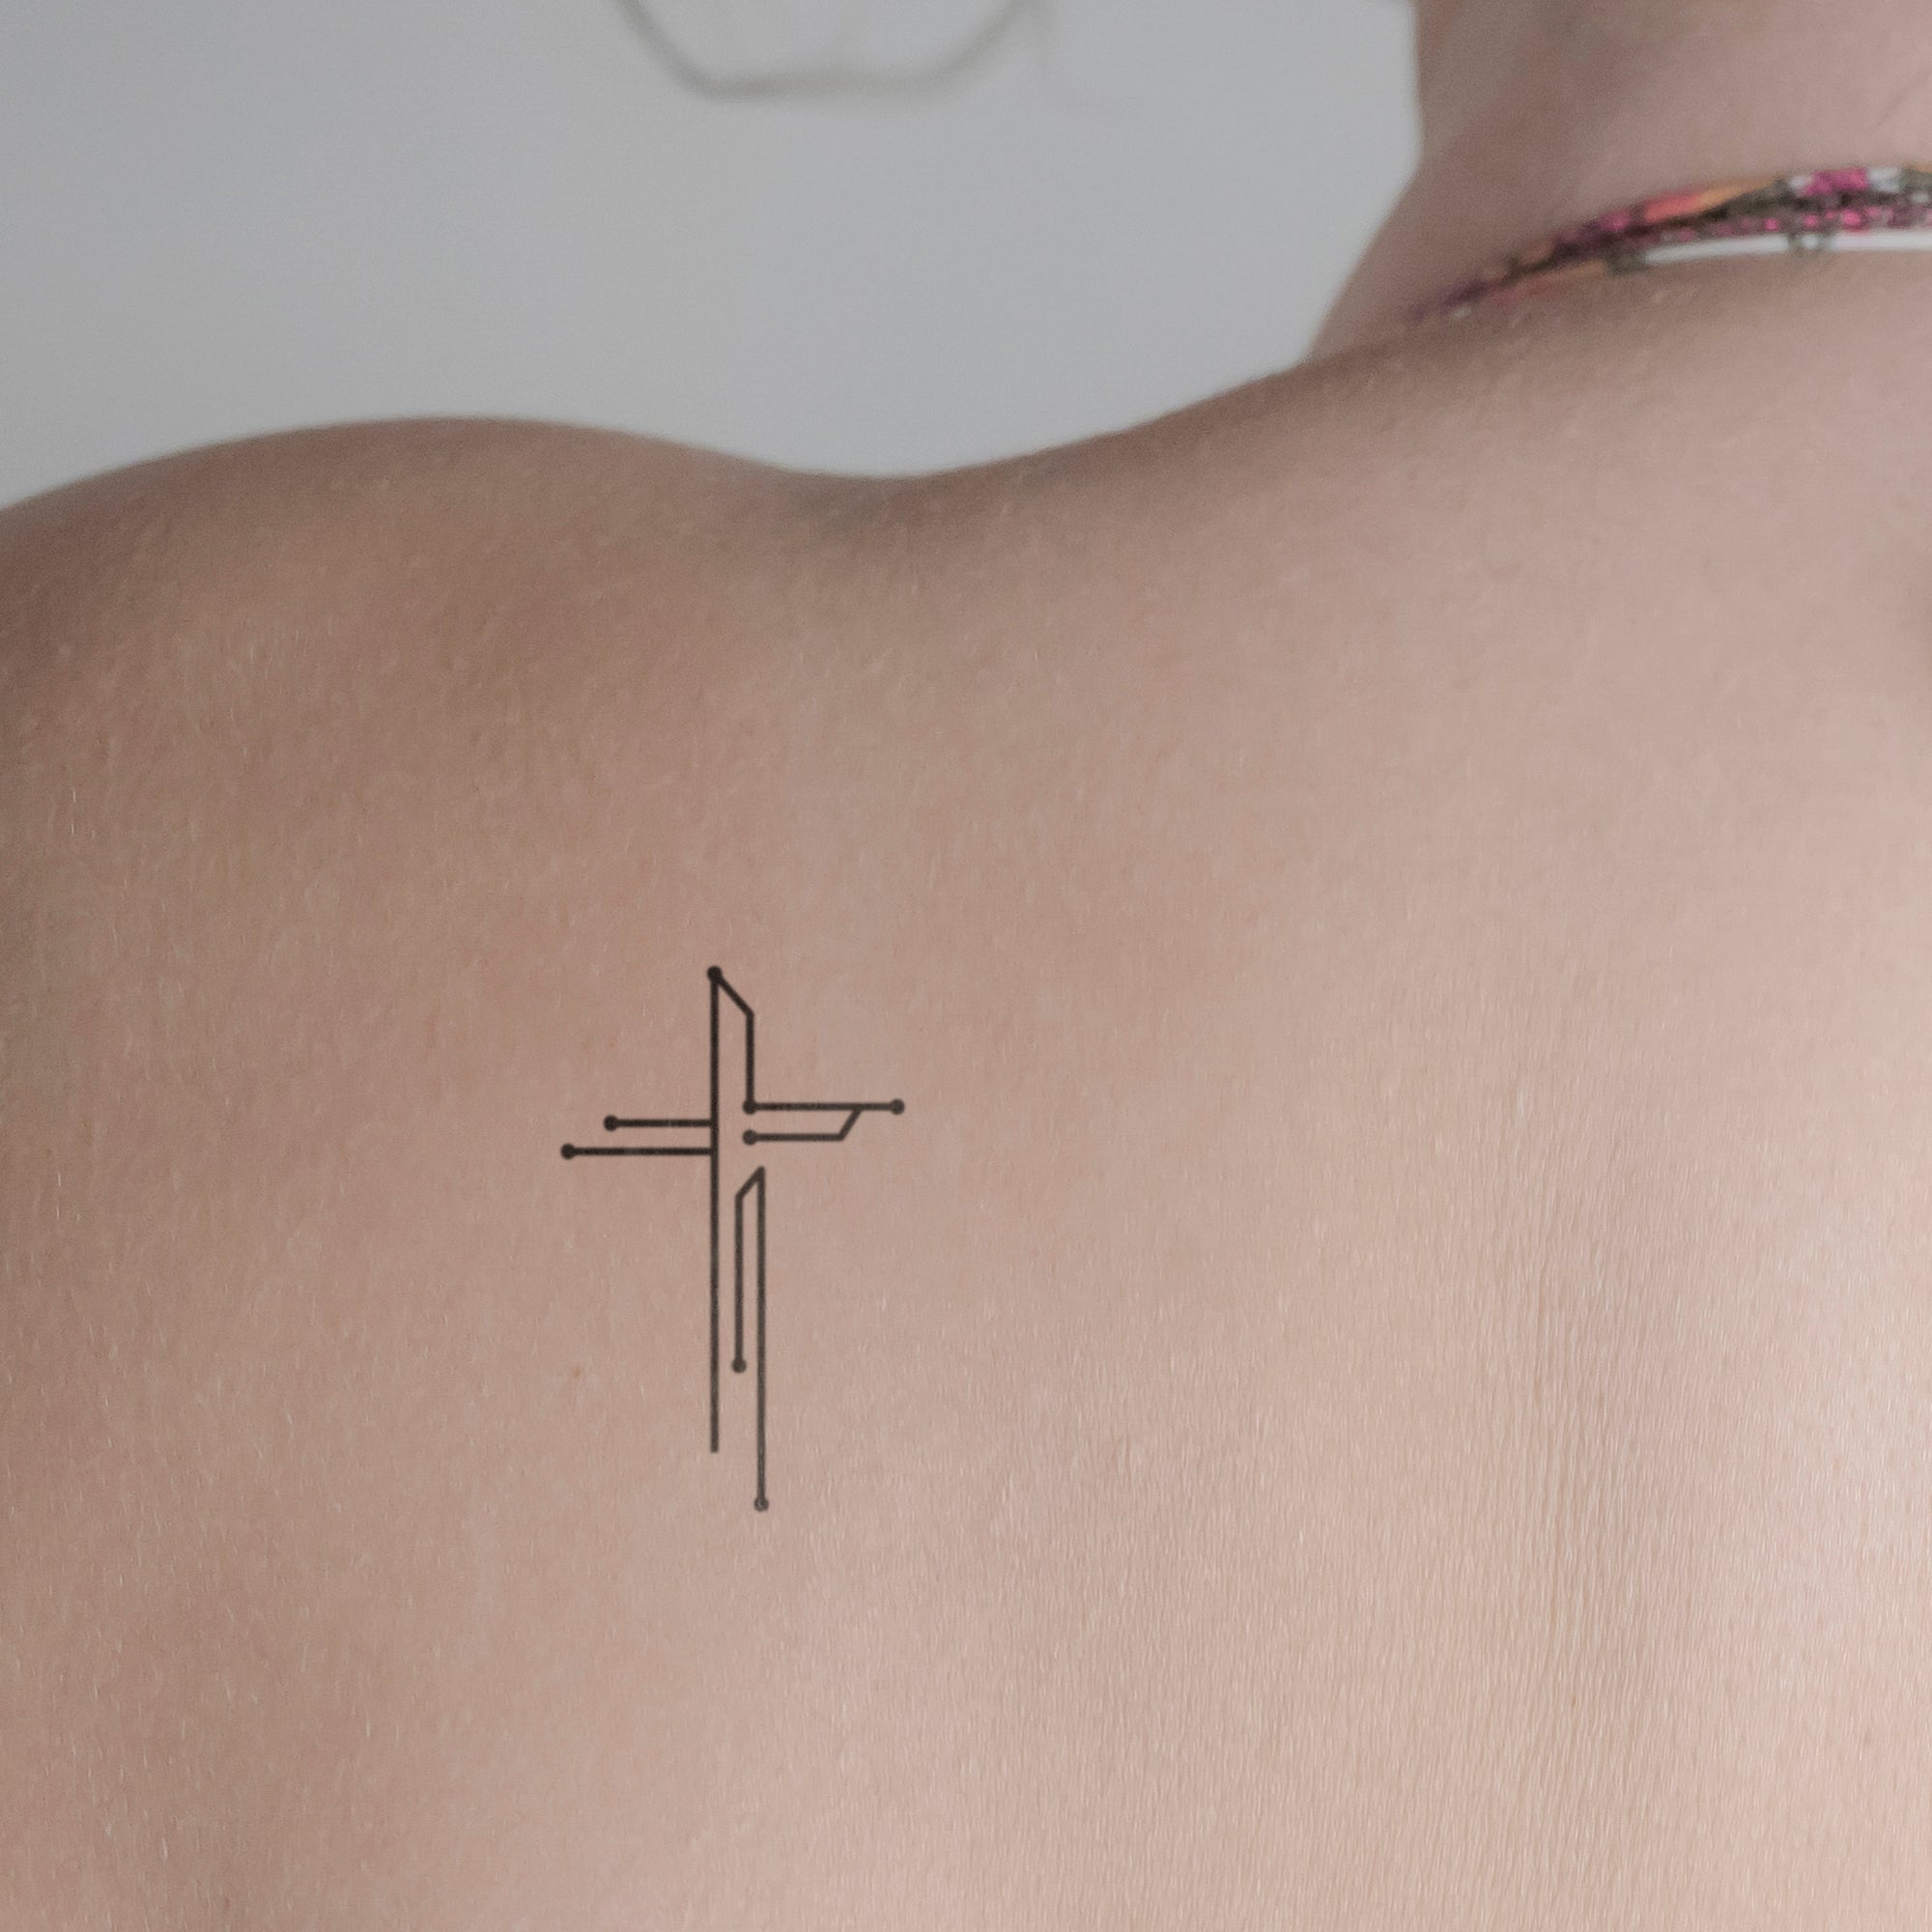 Abstraktes Kreuz Tattoo von minink, der Marke für temporäre Tattoos.